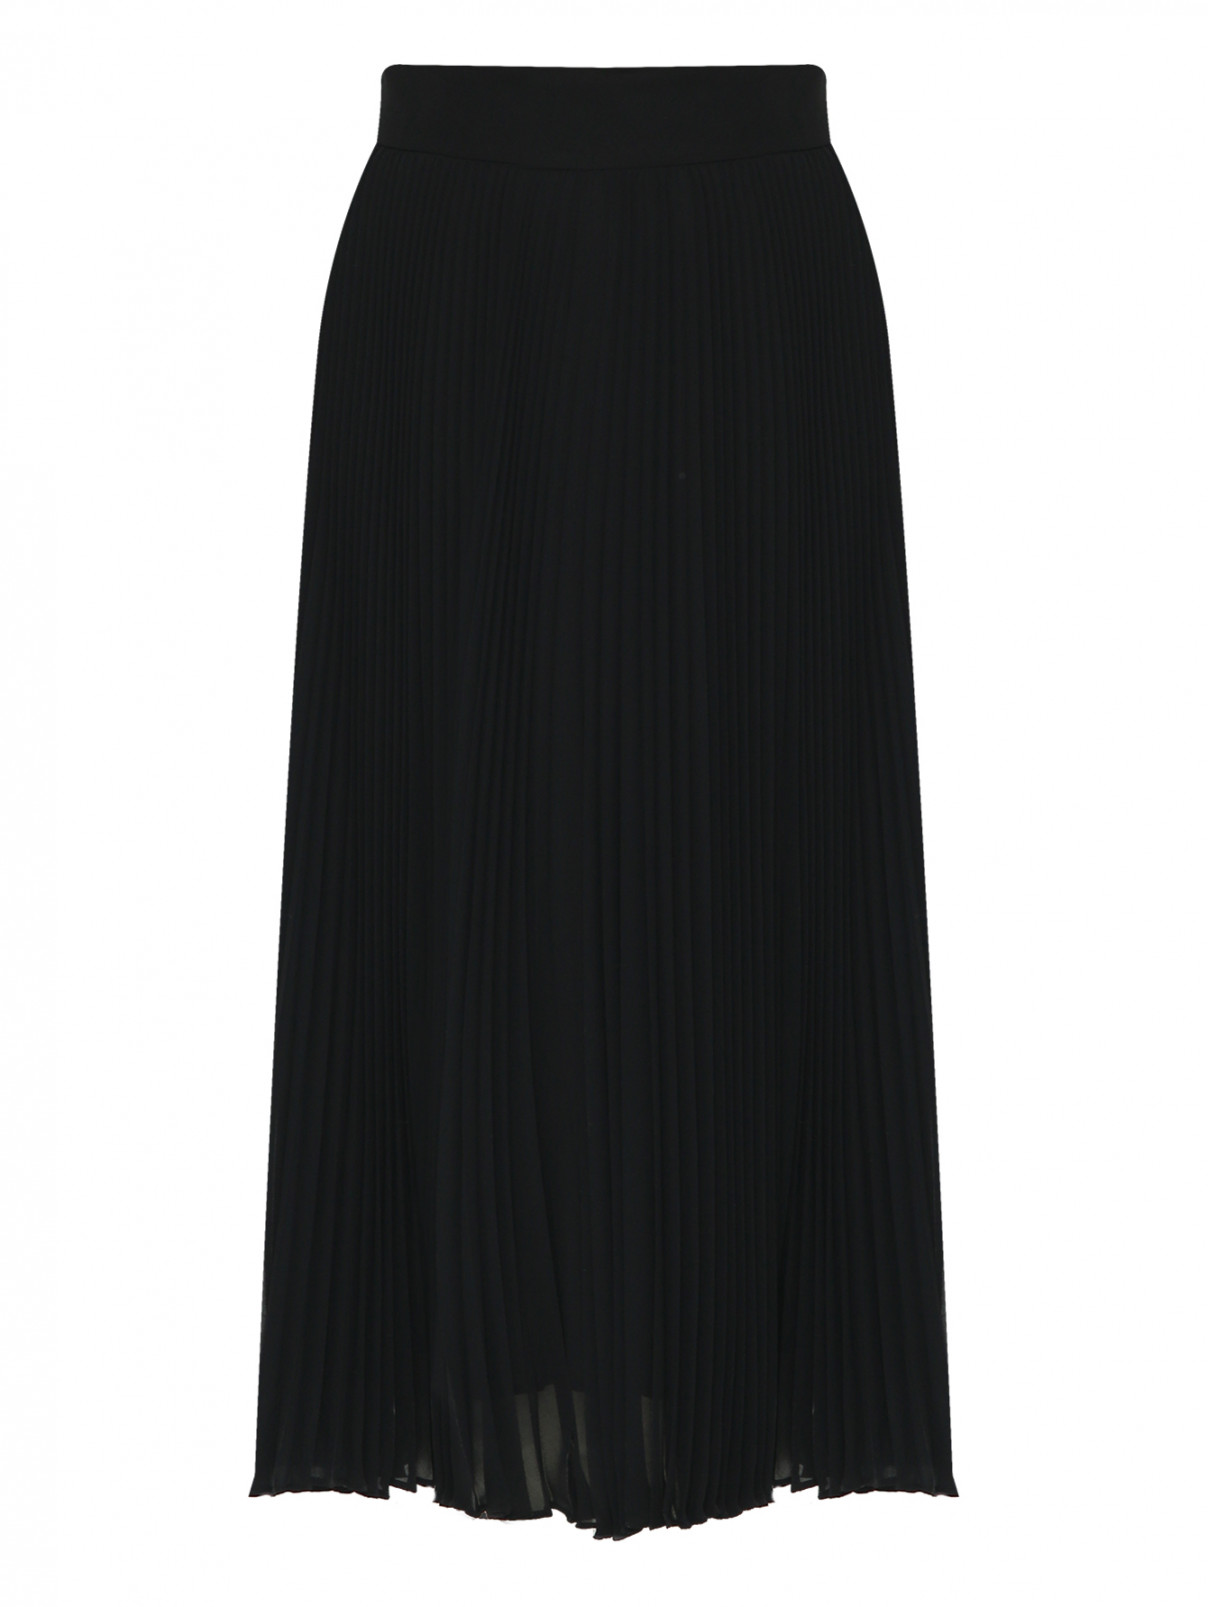 Плиссированная юбка-миди Max Mara  –  Общий вид  – Цвет:  Черный